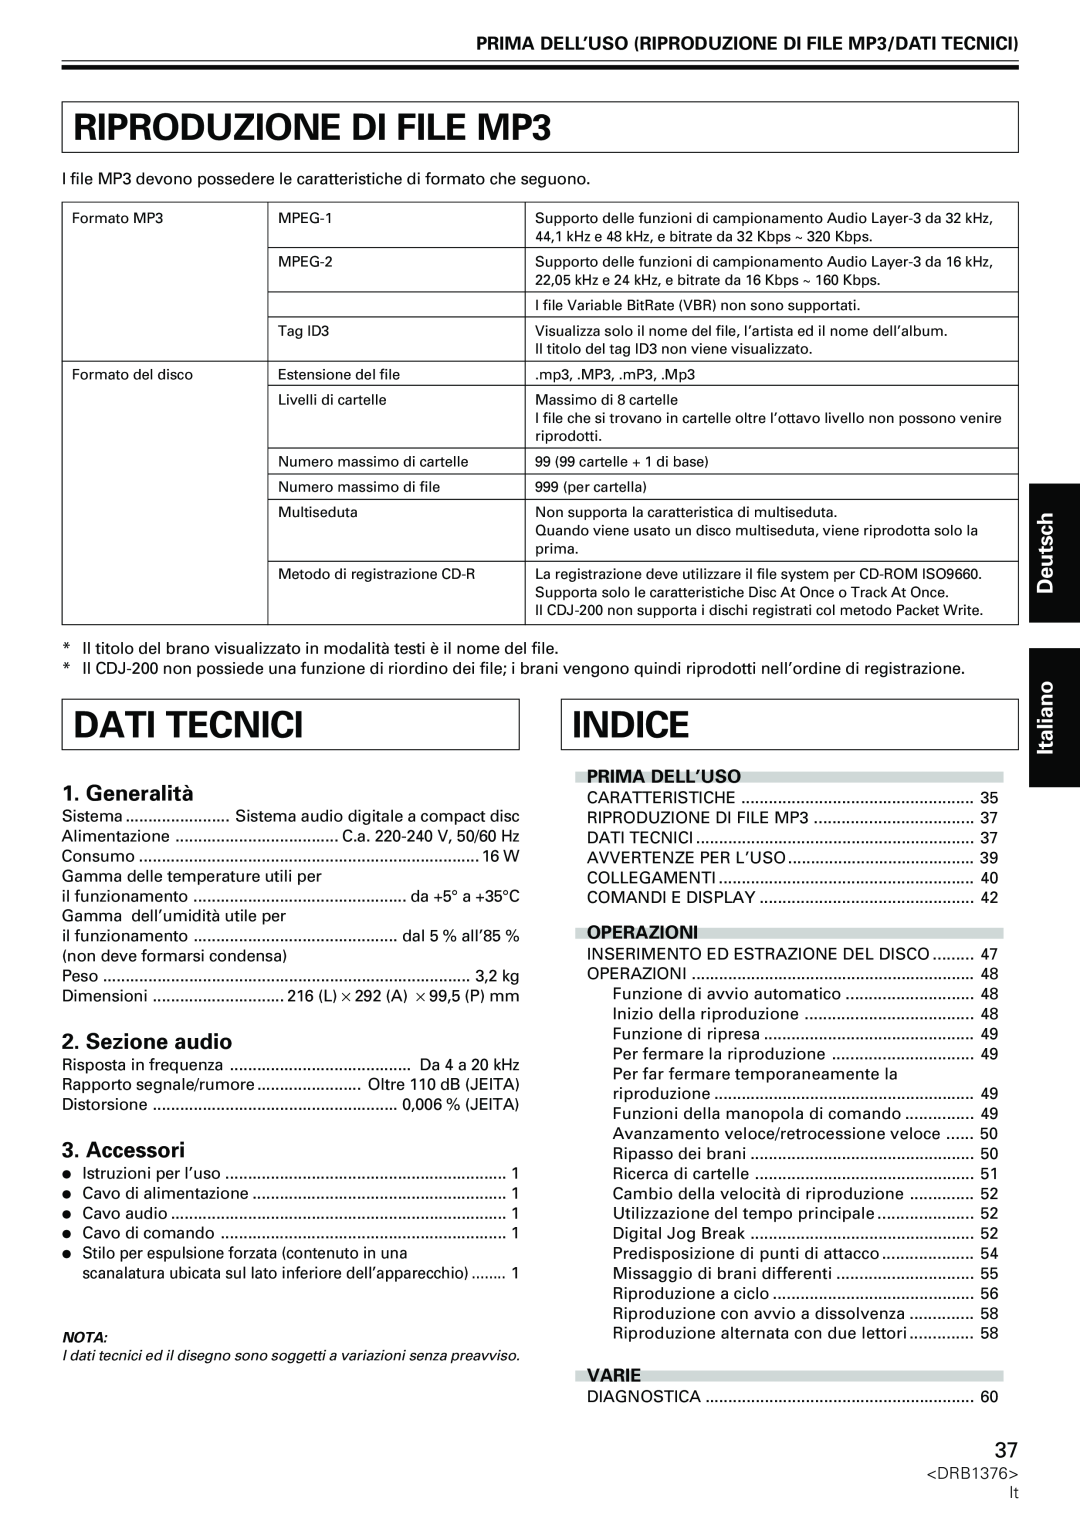 Pioneer CDJ-200 RIPRODUZIONE DI FILE MP3, Indice, Dati Tecnici, Deutsch, Generalità, Sezione audio, Accessori, Italiano 